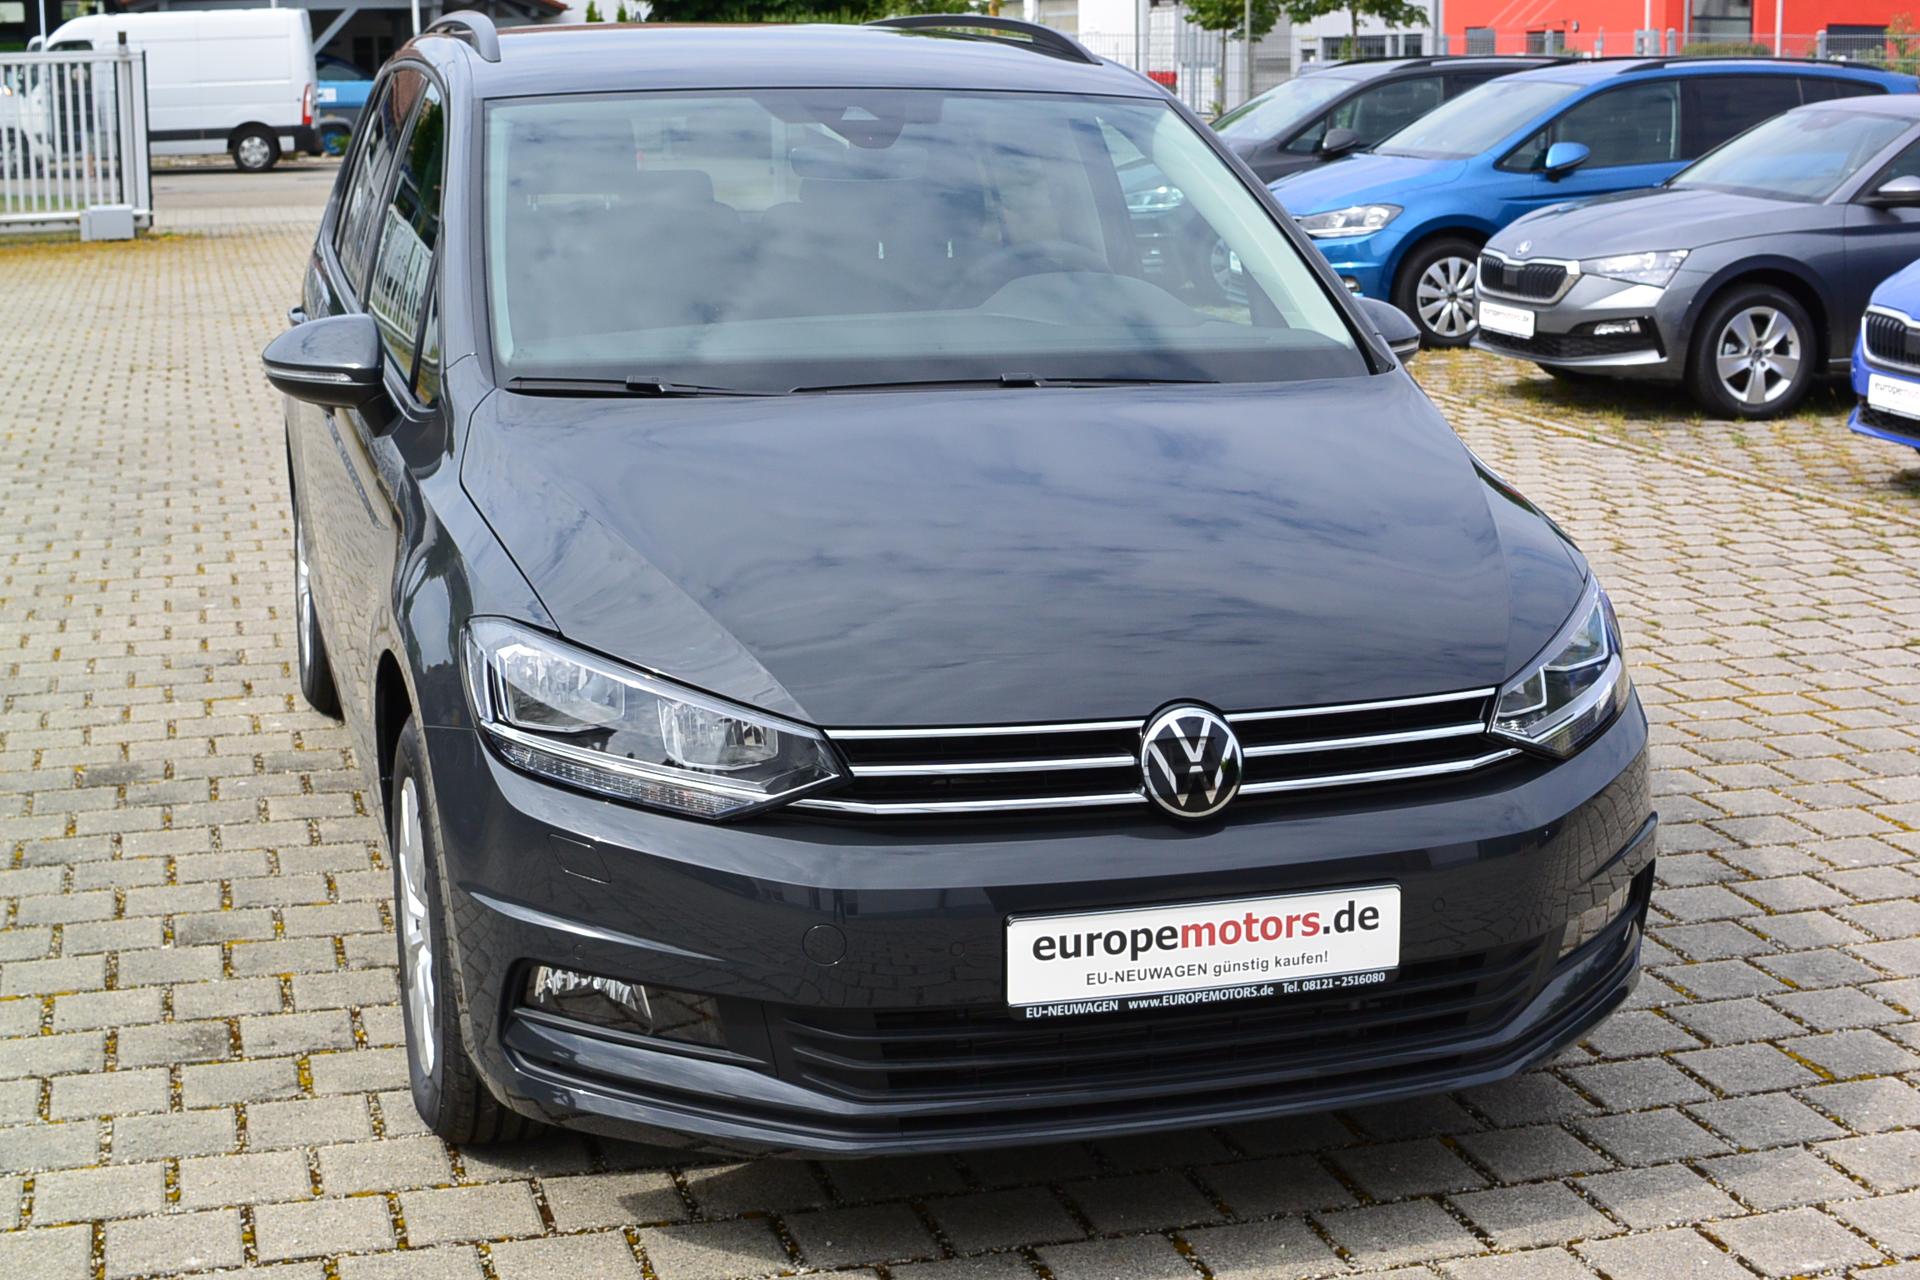 VW Touran Uranograu Reimport EU-Neuwagen nahe München